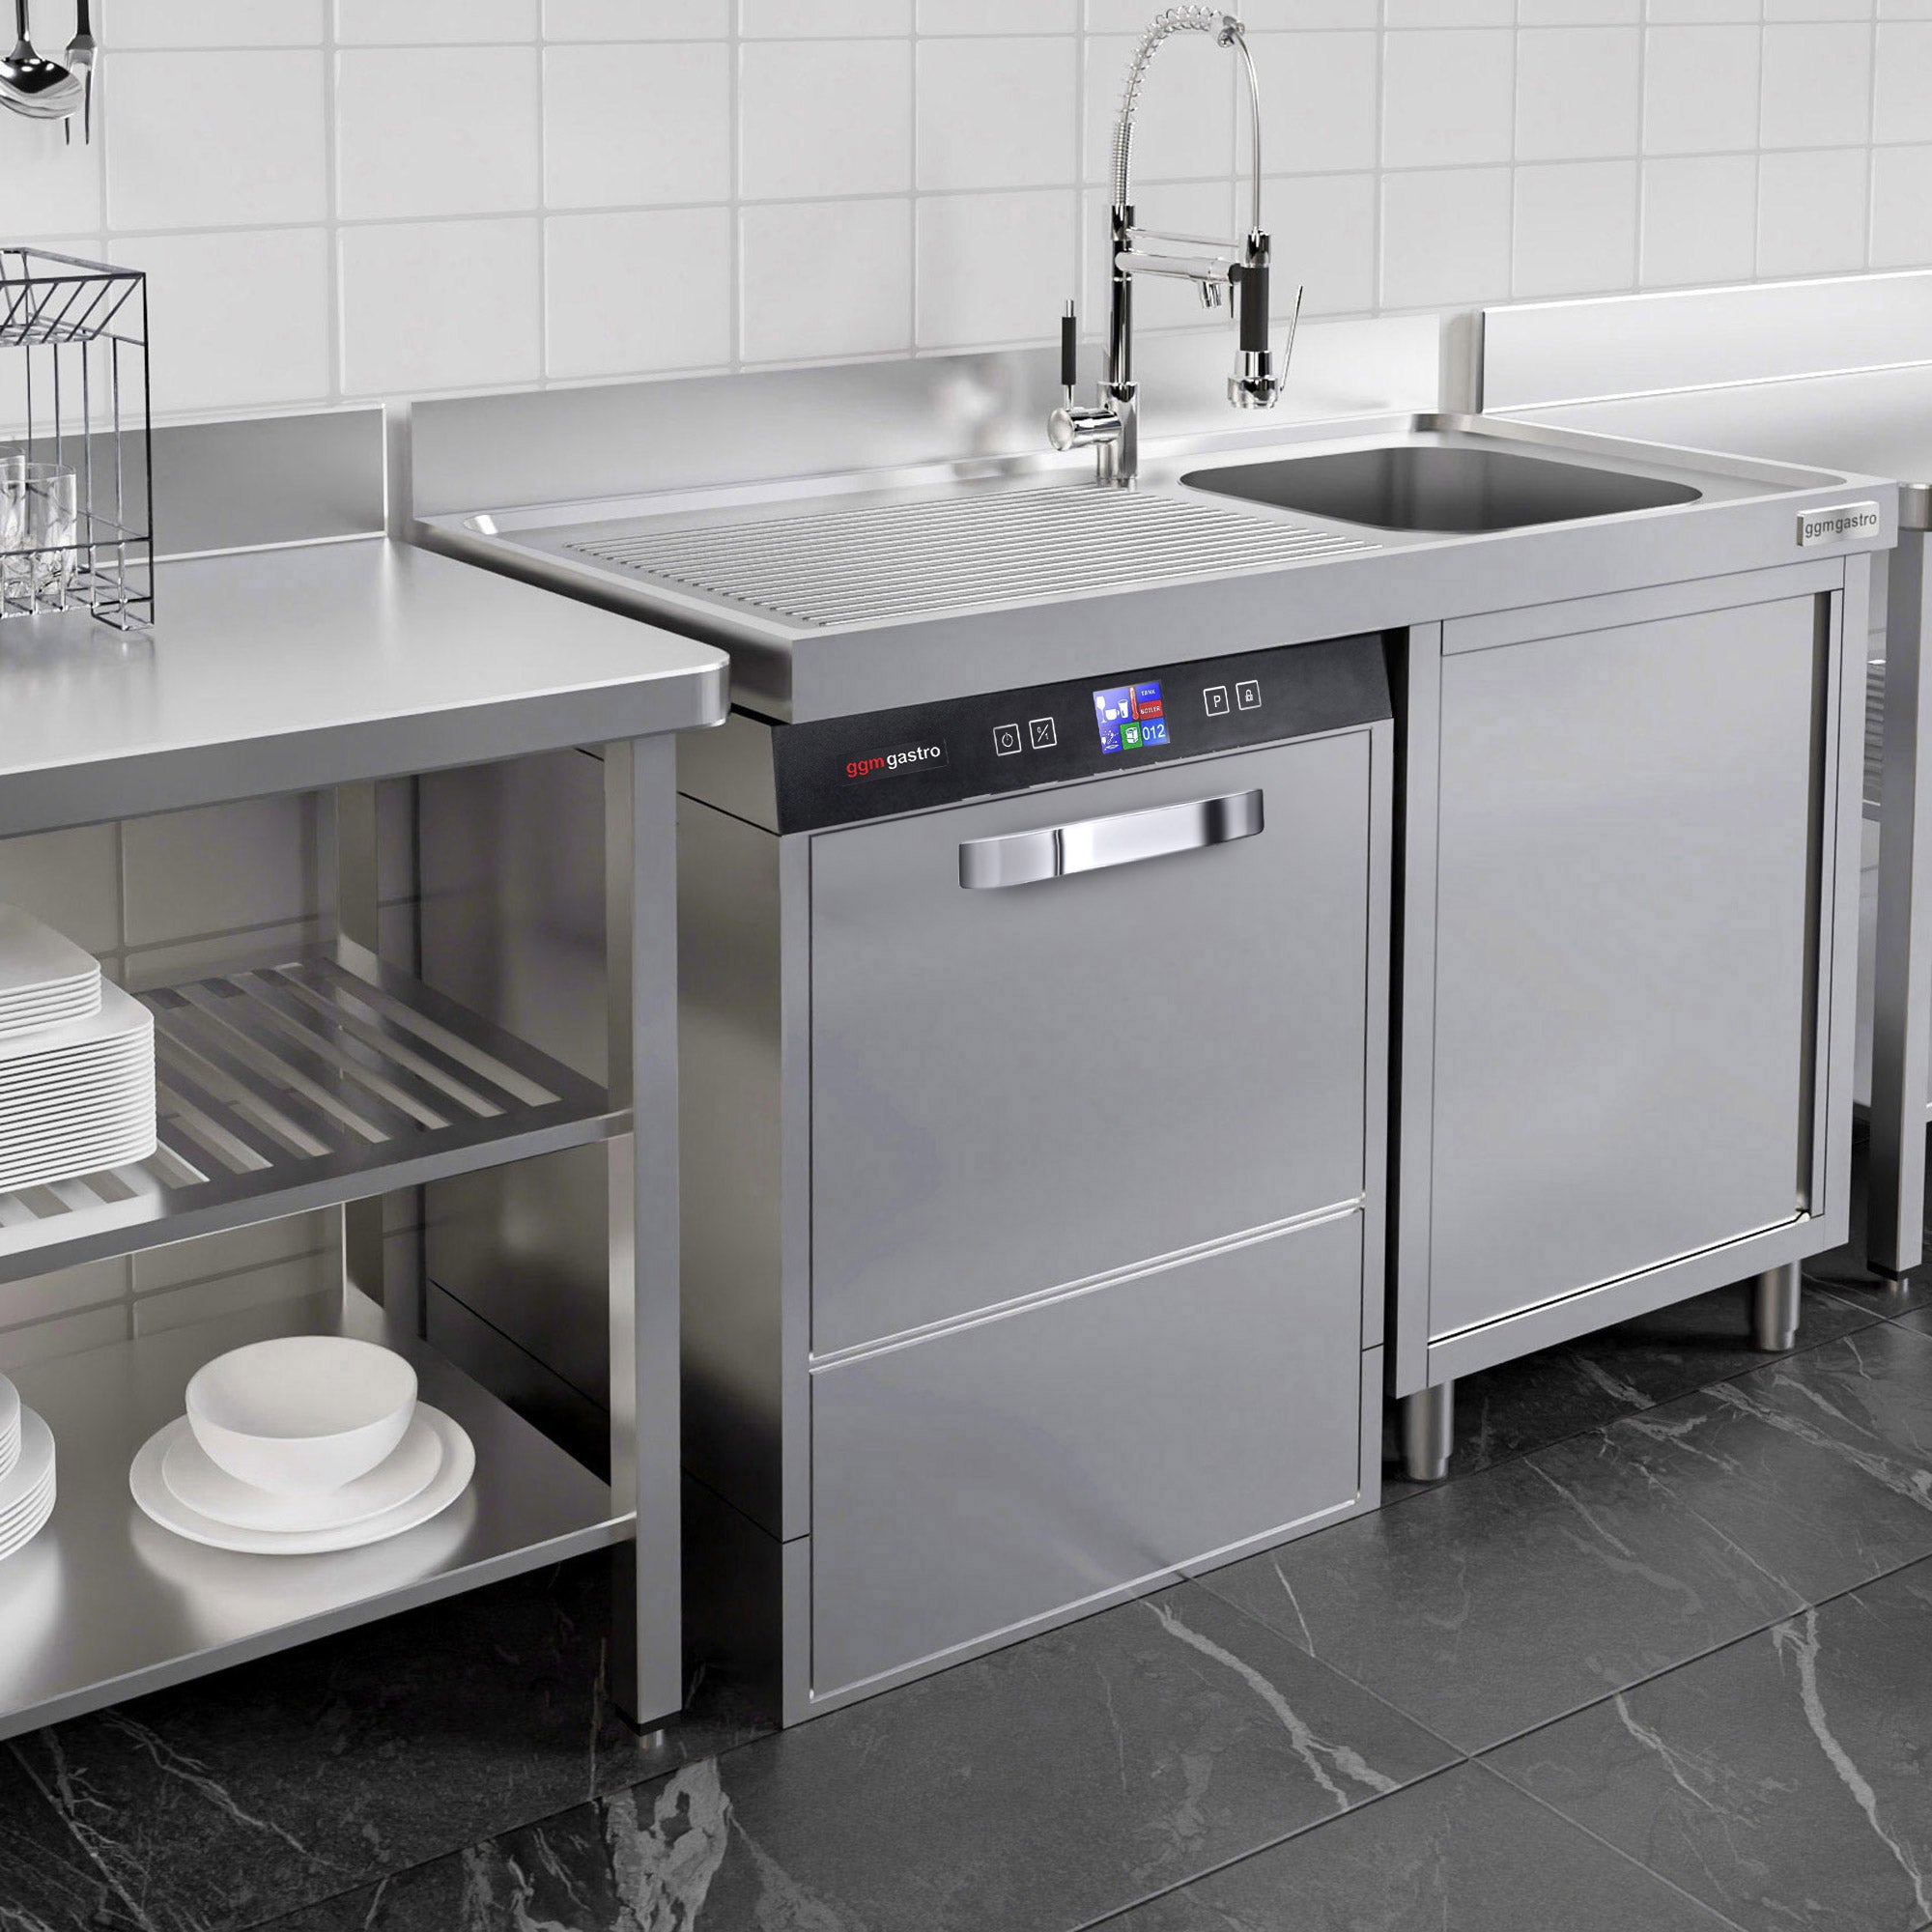 Oppvaskmaskin - Digital - 3,55 kW - med oppvaskmiddel, skyllemiddel og lutpumpe